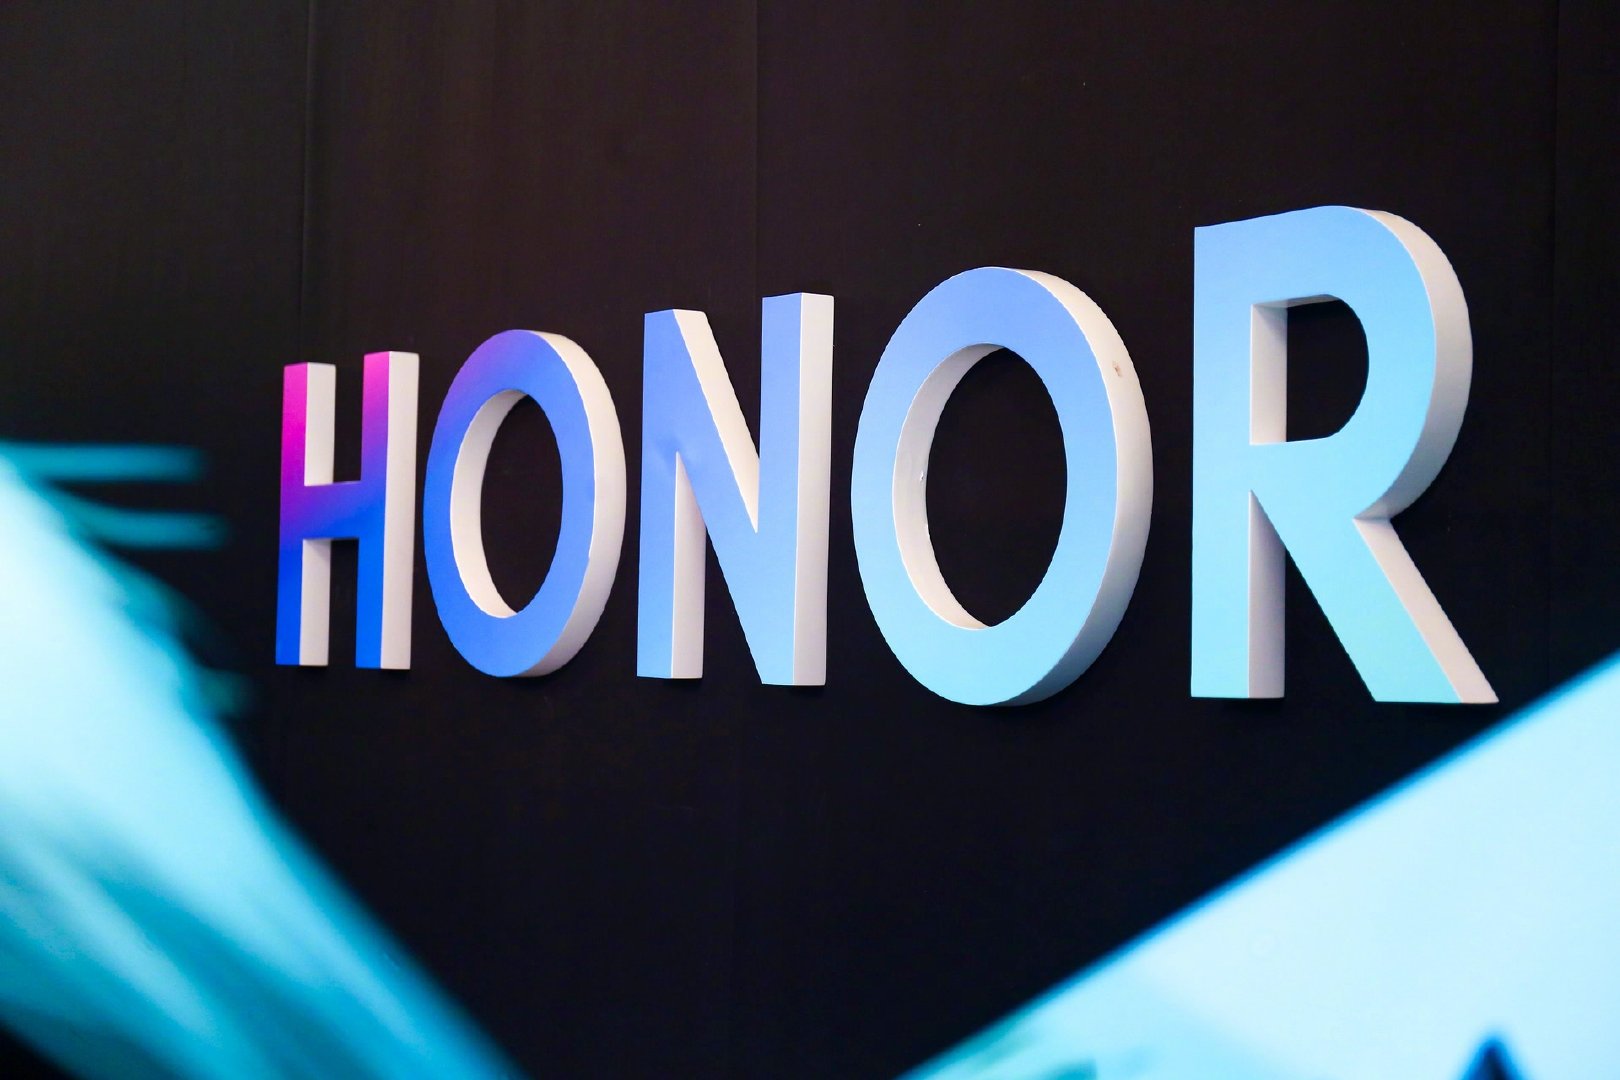 Smartphone baru Honor bakal dilengkapi layanan Google